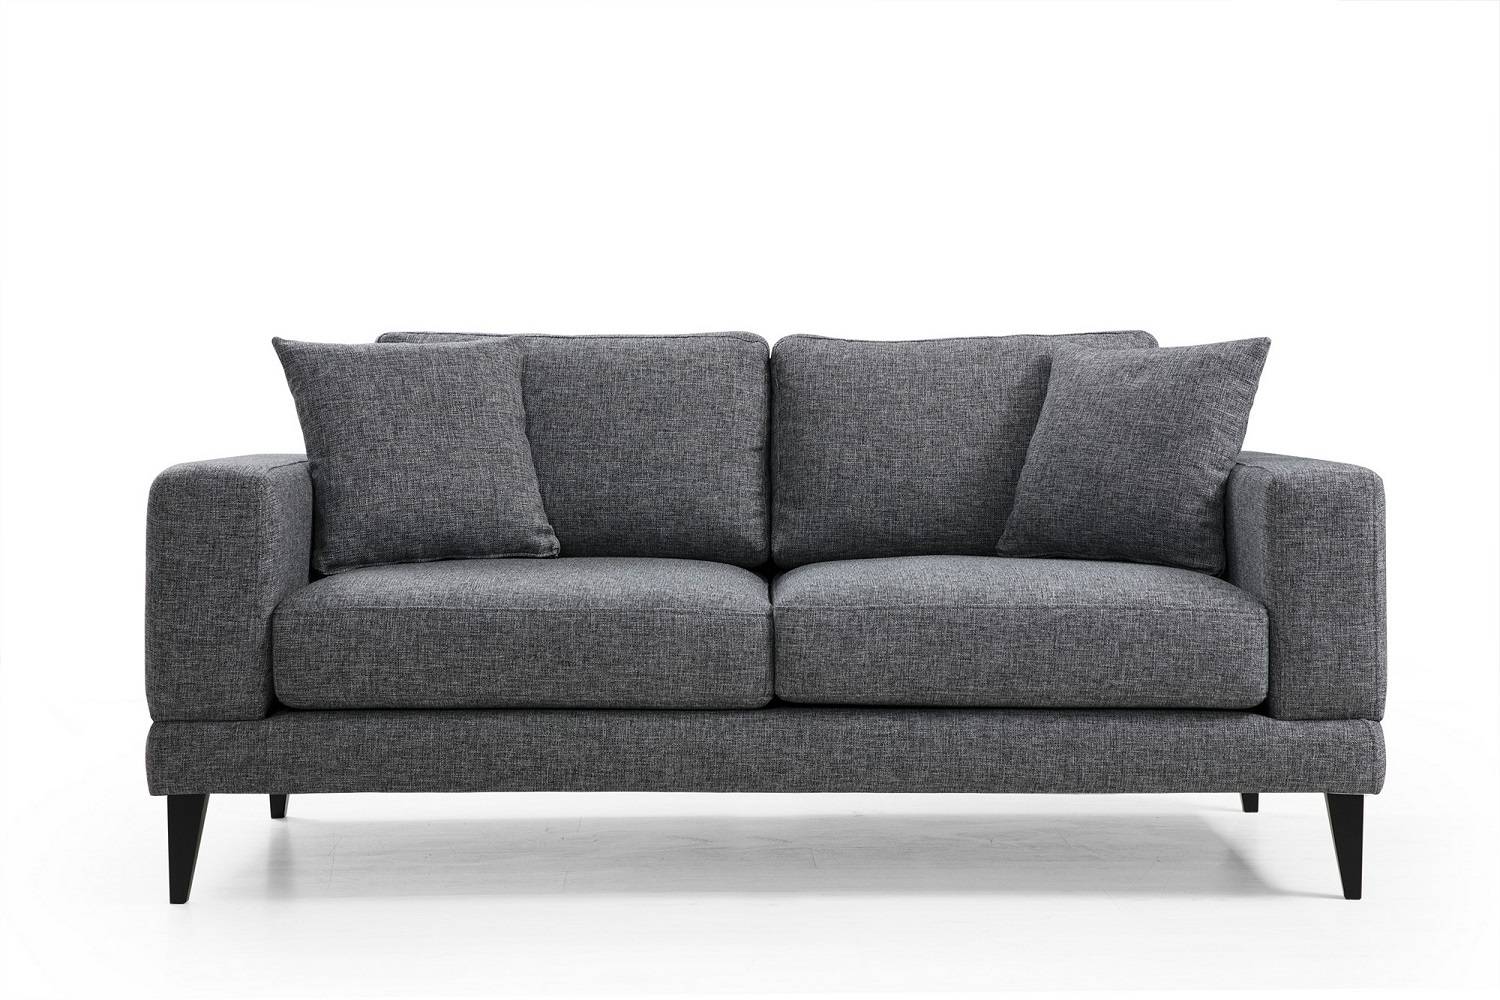 Sofahouse Designová sedačka Santino 180 cm tmavě šedá